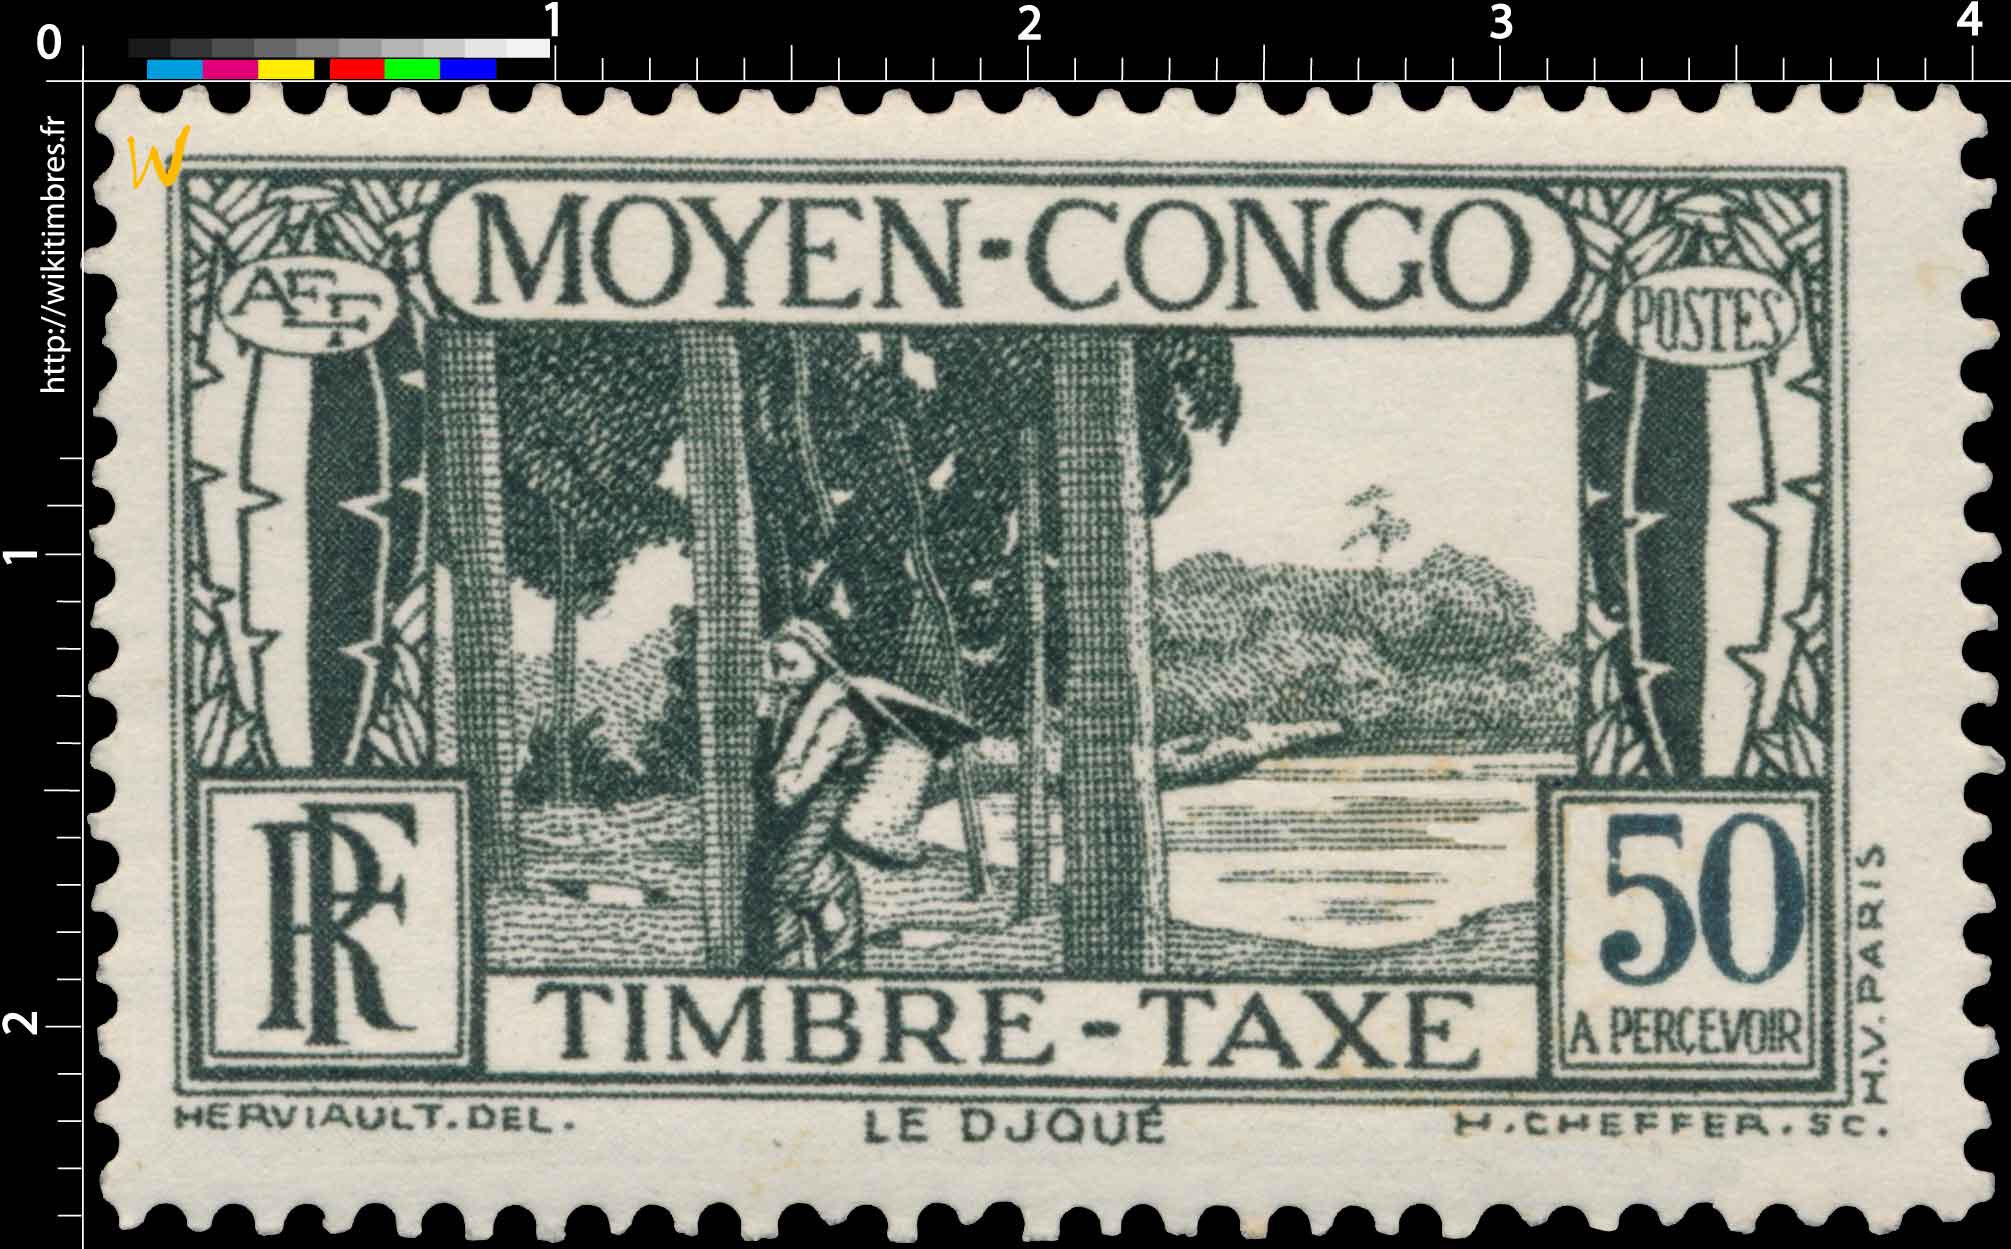 Congo - Le Djoudj